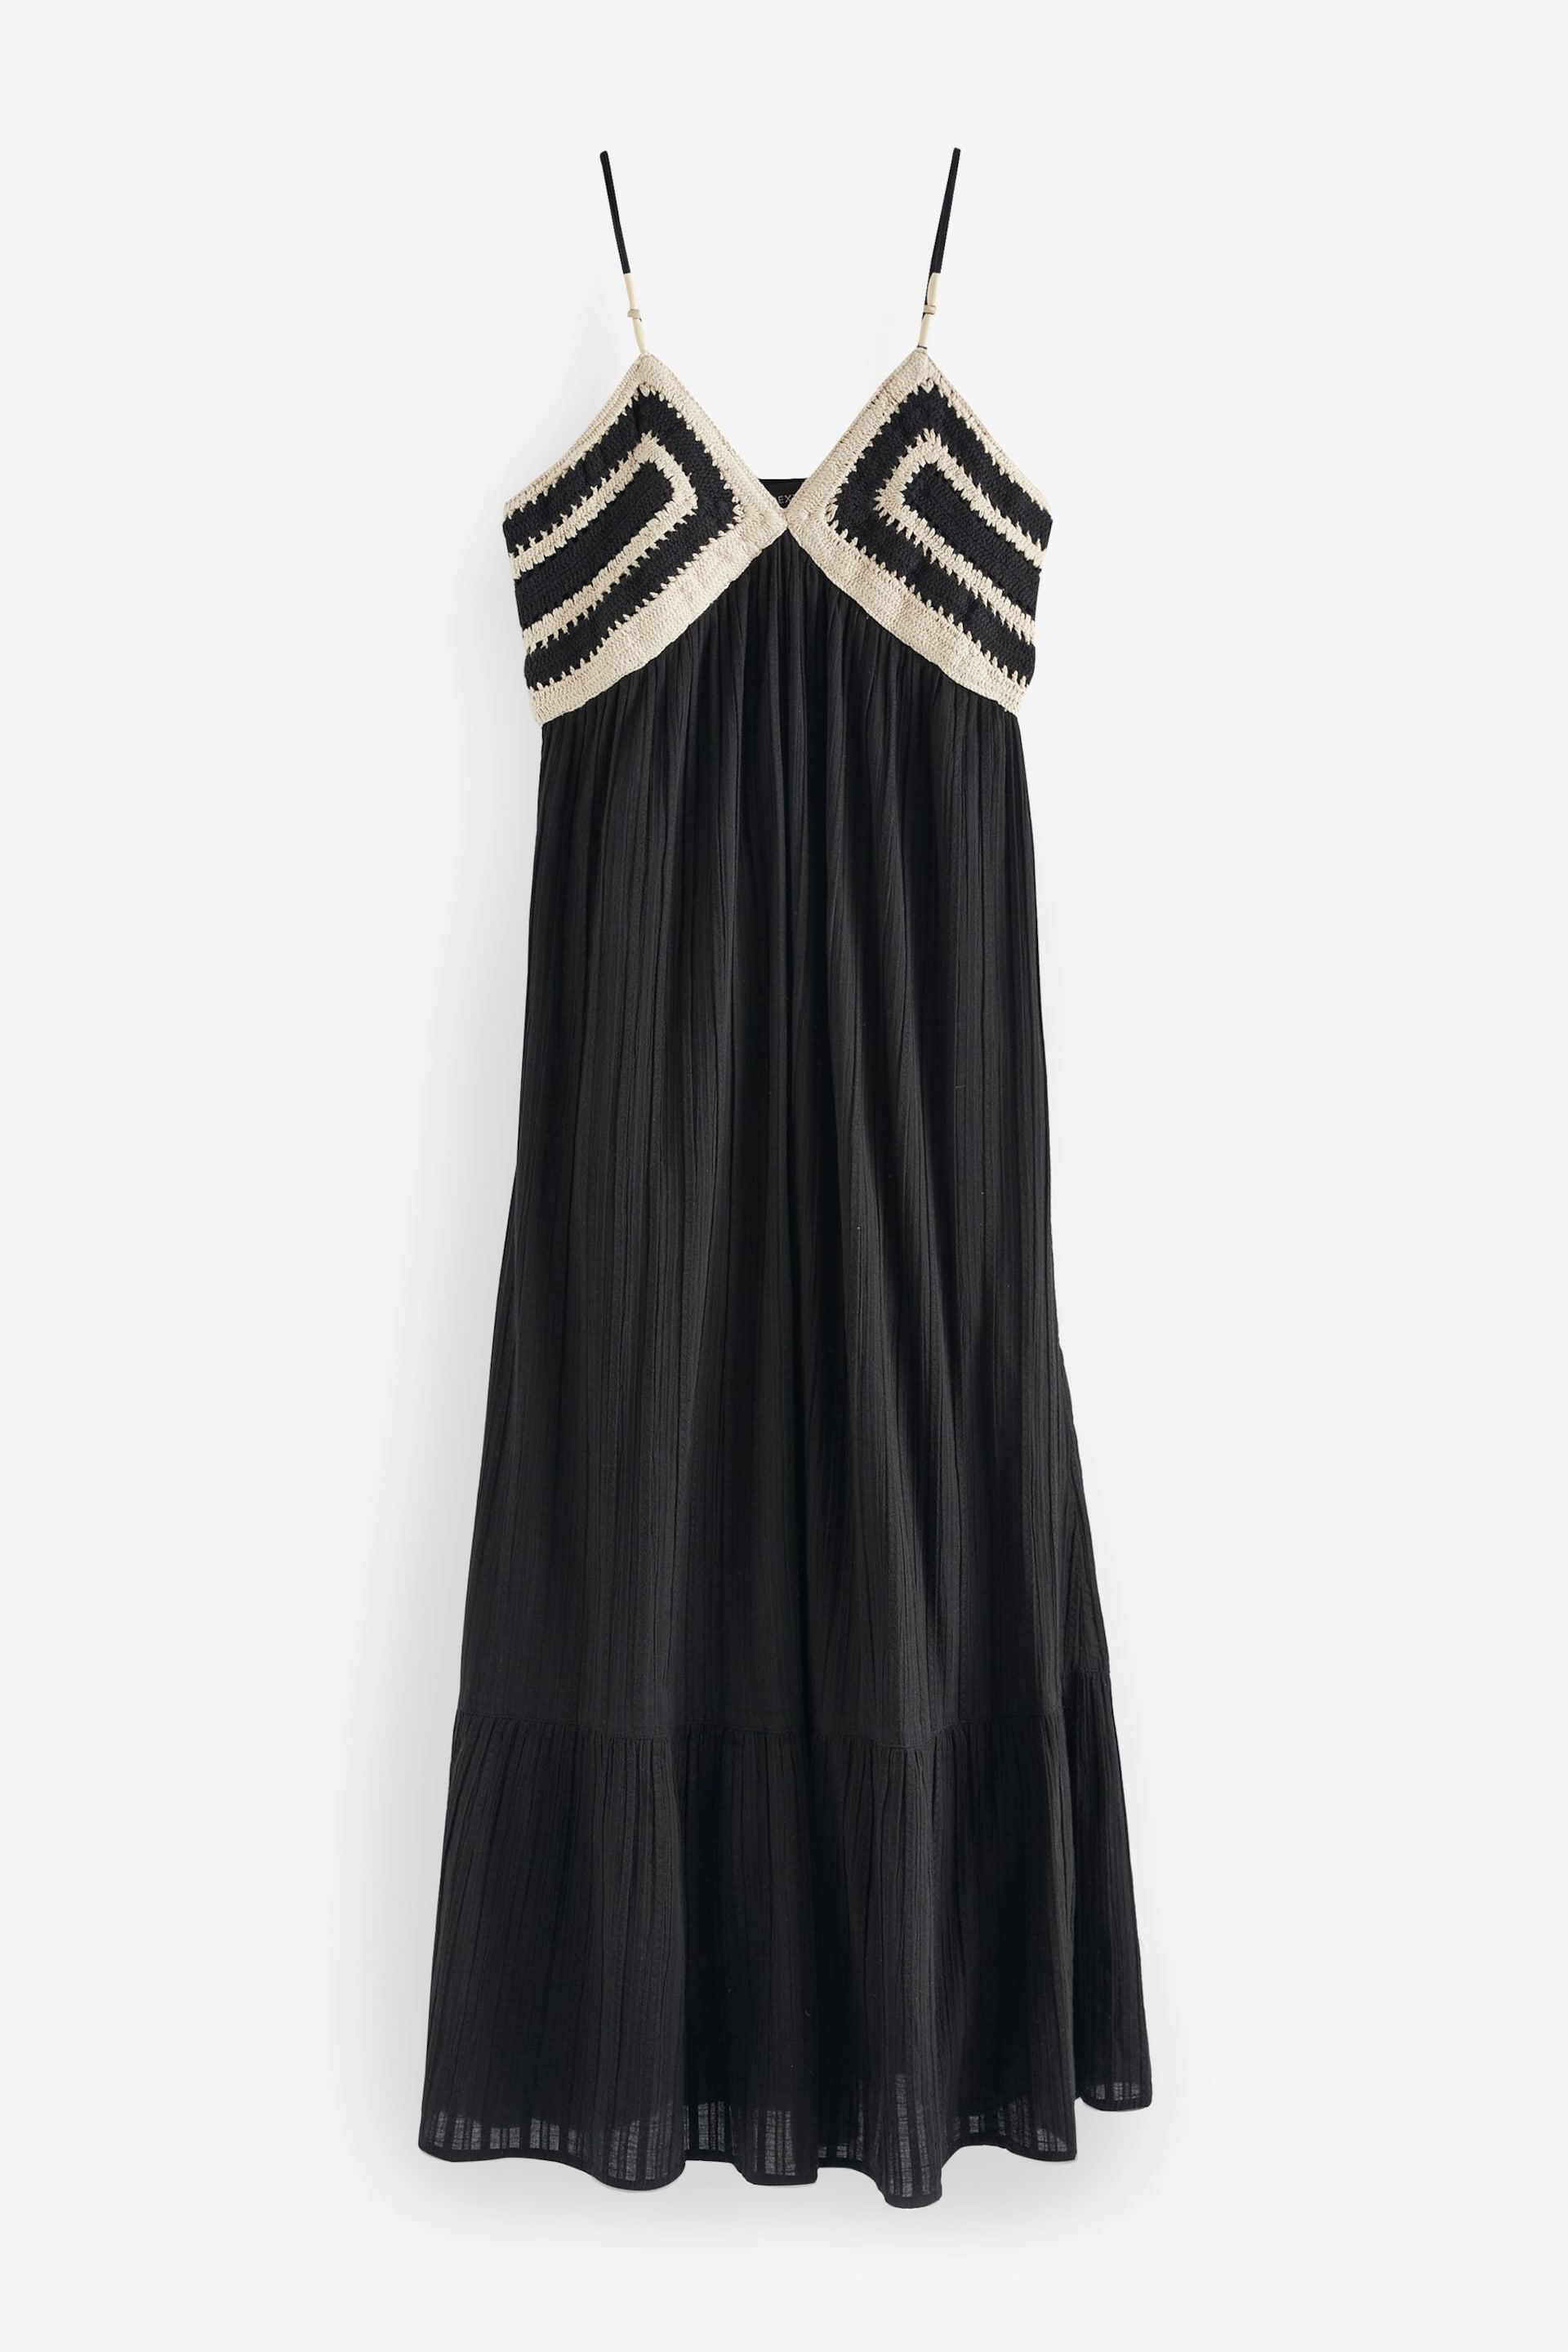 Black/White Crochet Maxi Summer Dress - Image 8 of 9